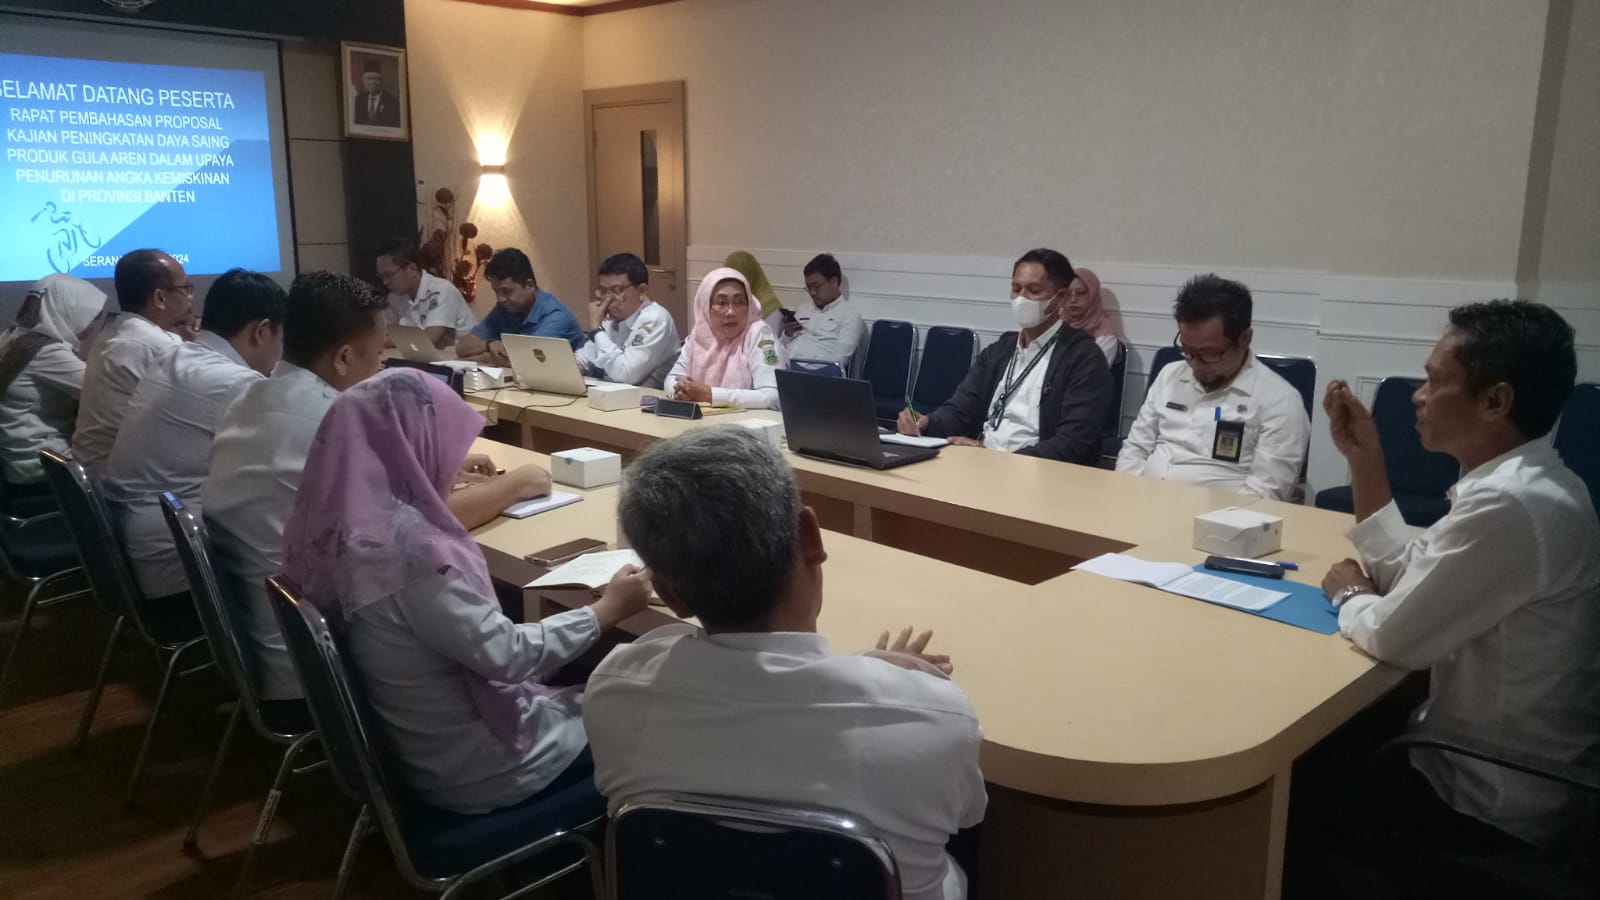 Rapat Pembahasan Proposal Kajian Peningkatan Daya Saing Produk Gula Aren Dalam Upaya Penurunan Angka Kemiskinan di Provinsi Banten